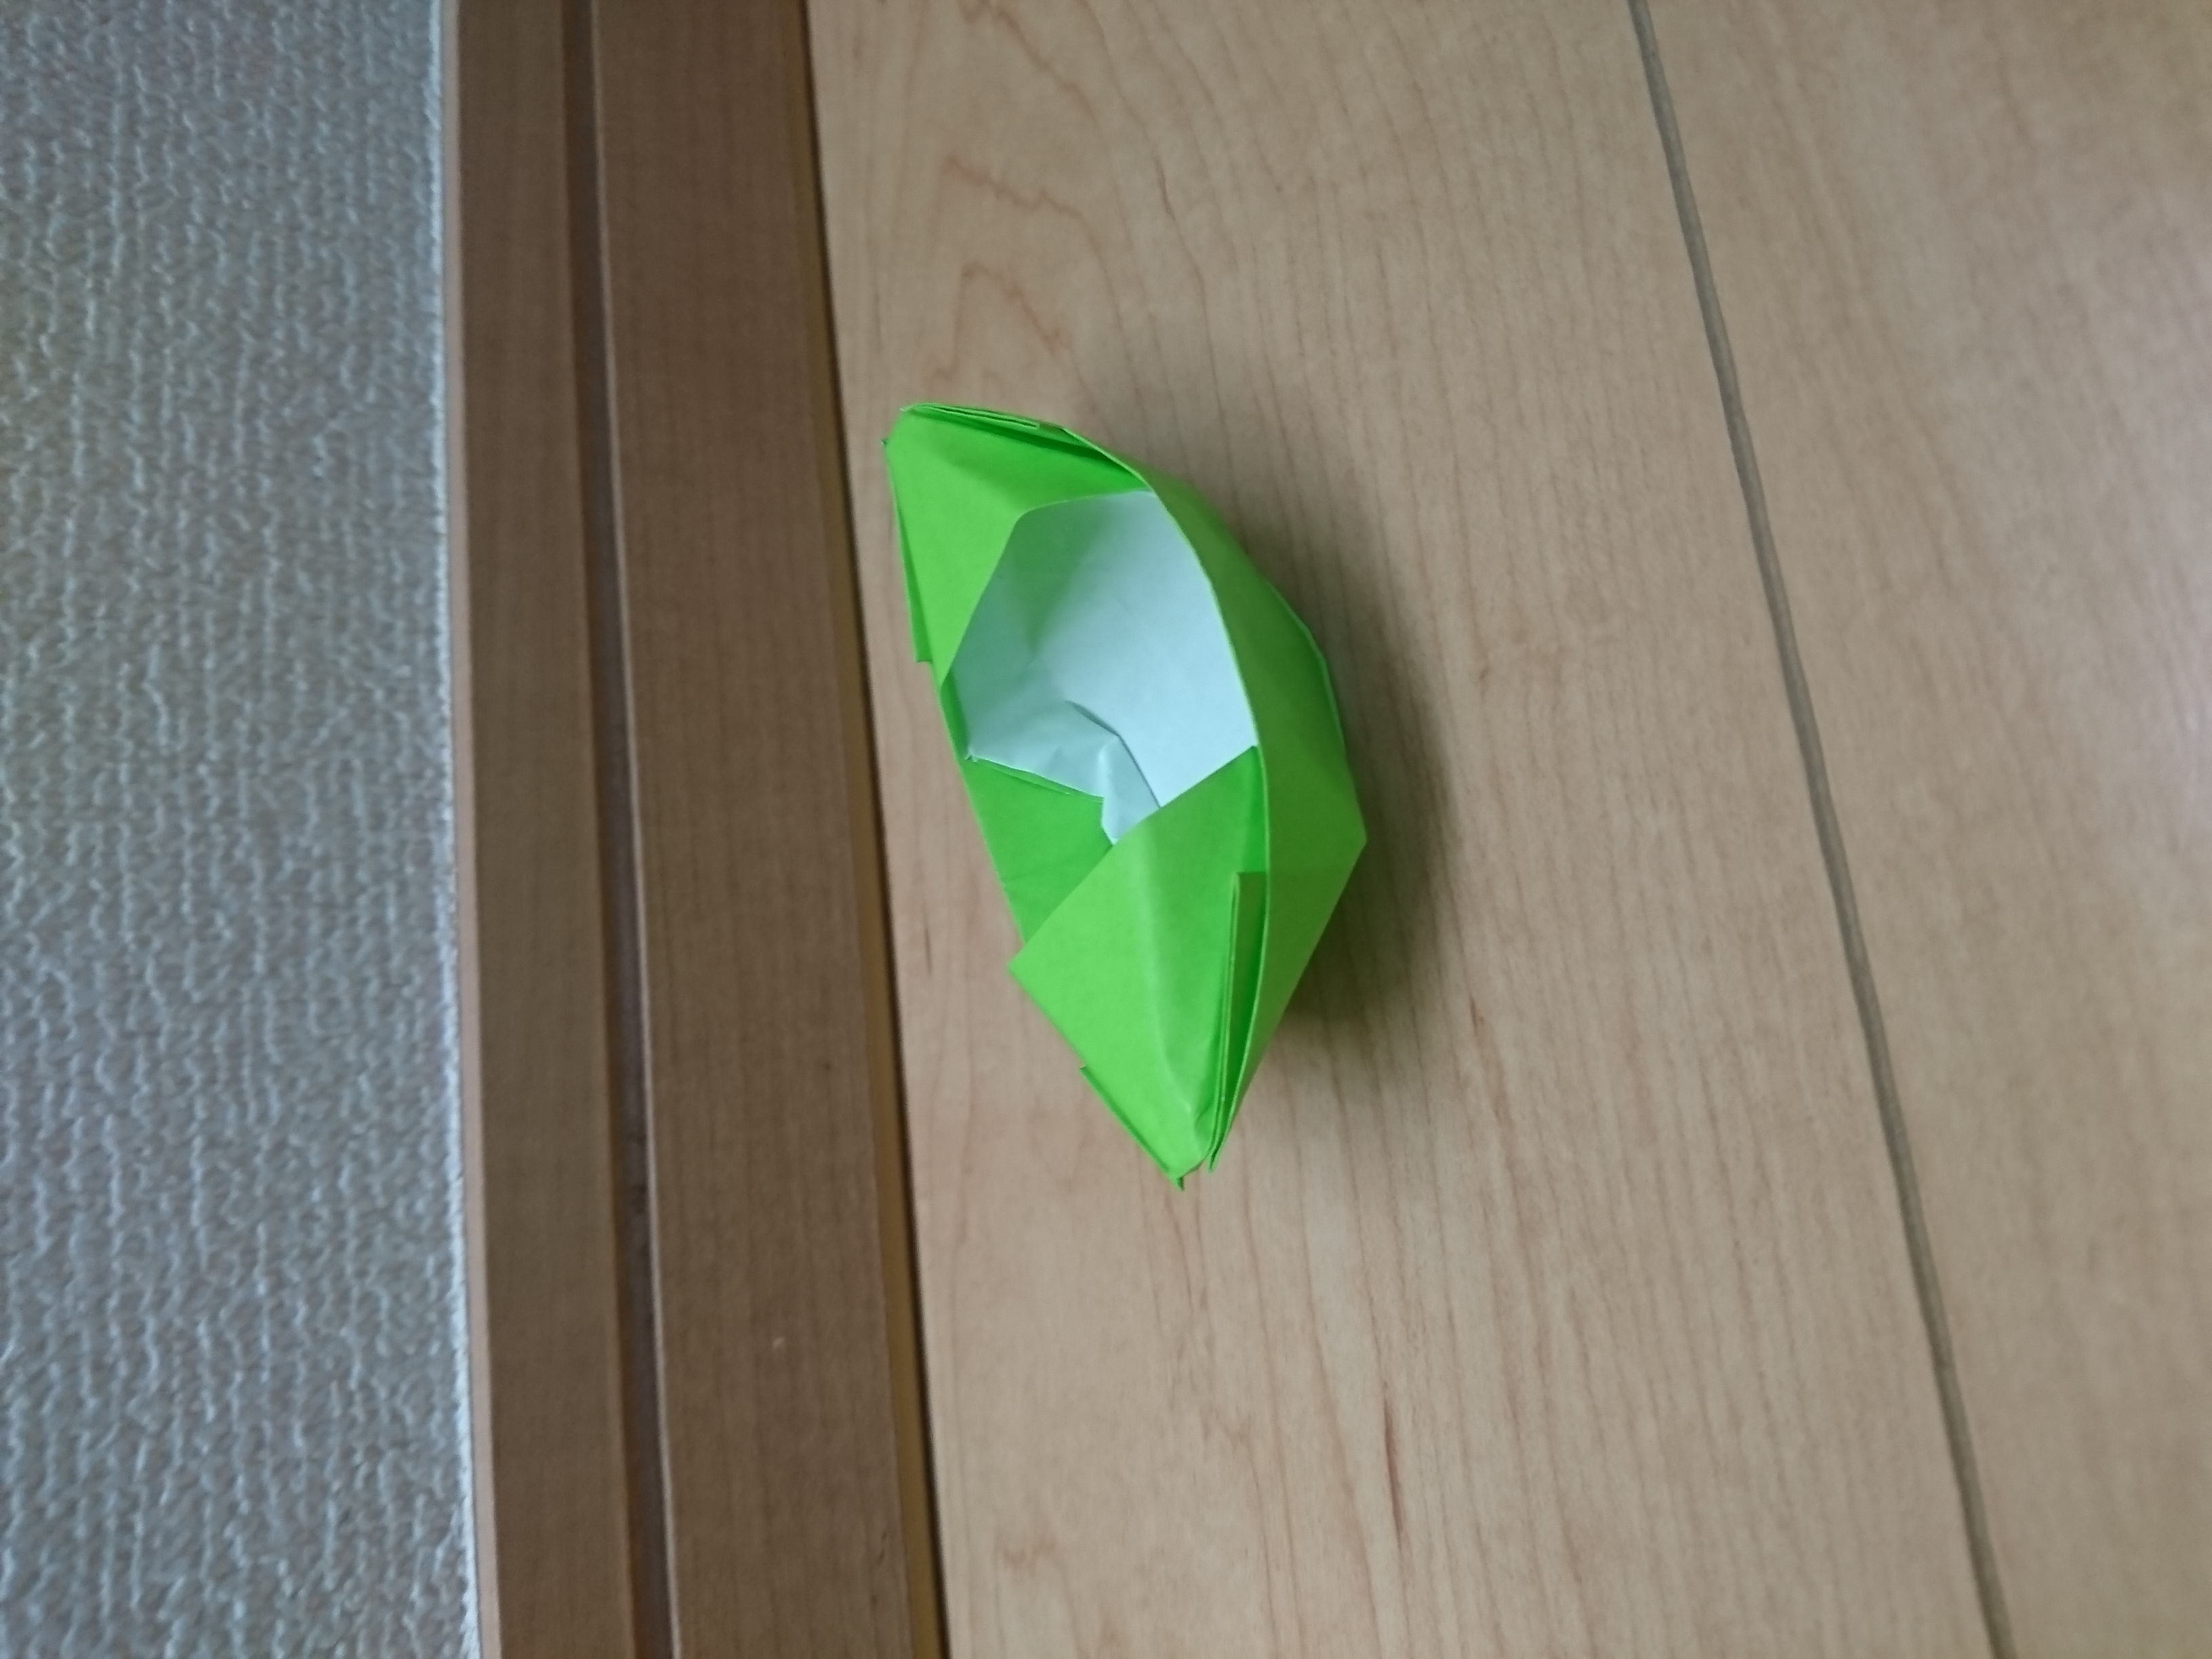 折り紙で作る 船 の折り方 簡単なものや少し難しい立体の作り方まで解説 暮らし の